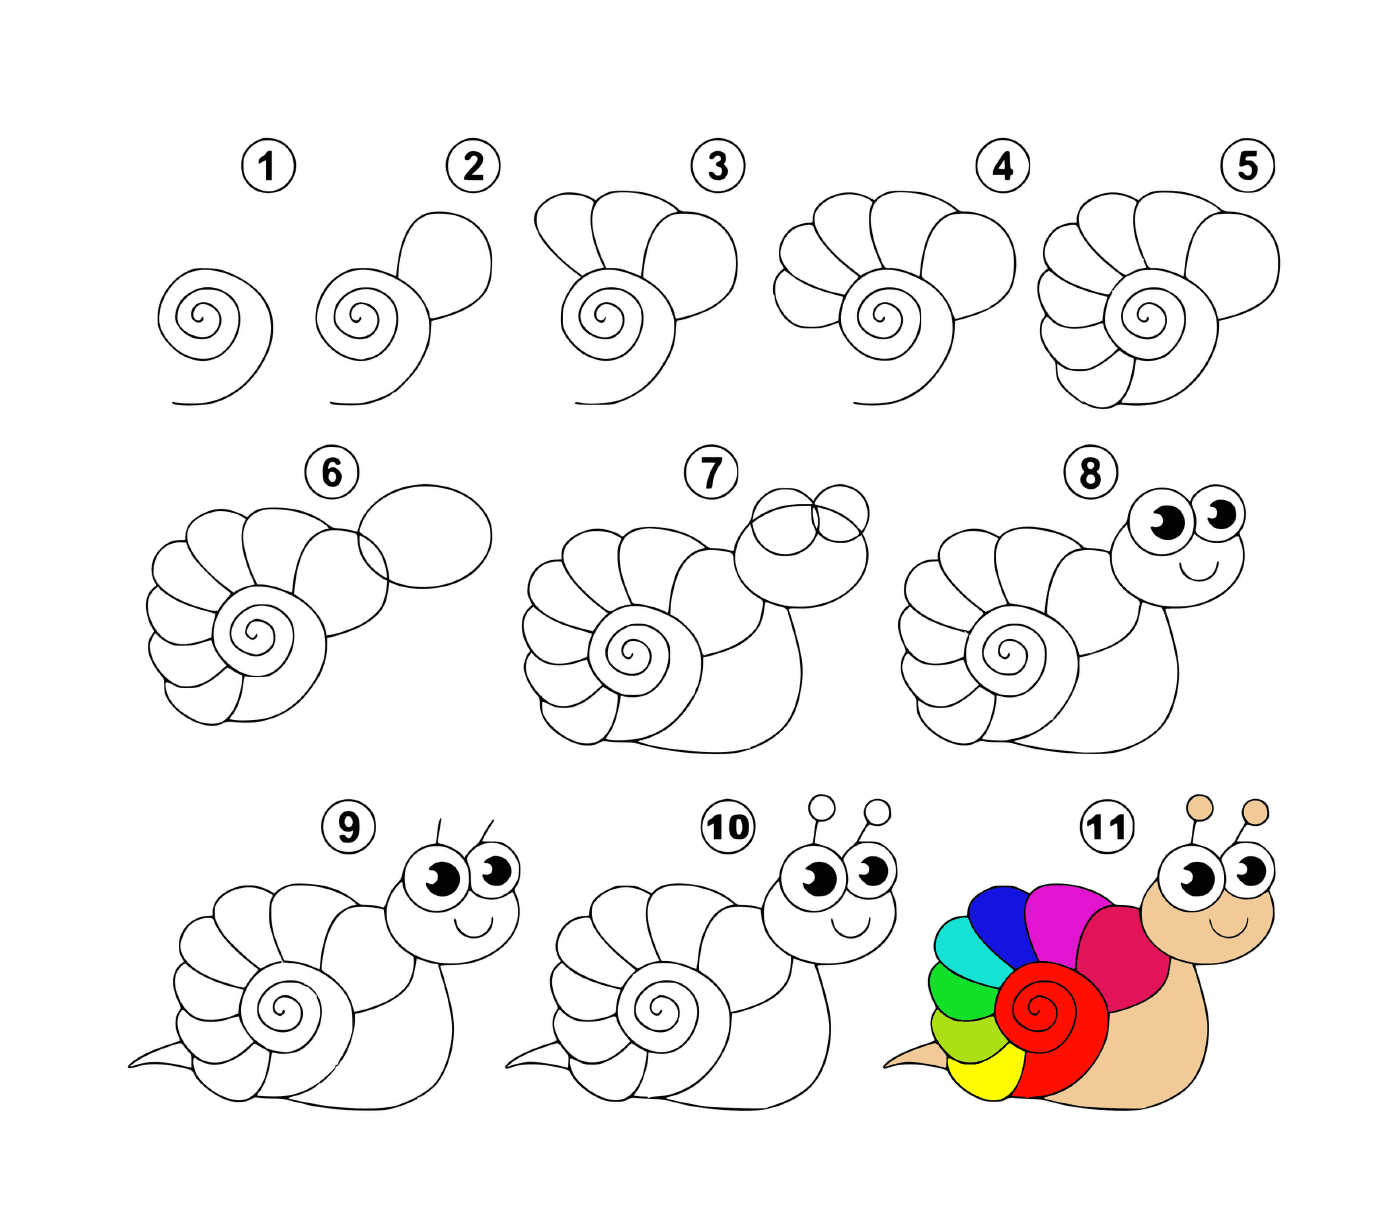  Como desenhar um caracol facilmente 